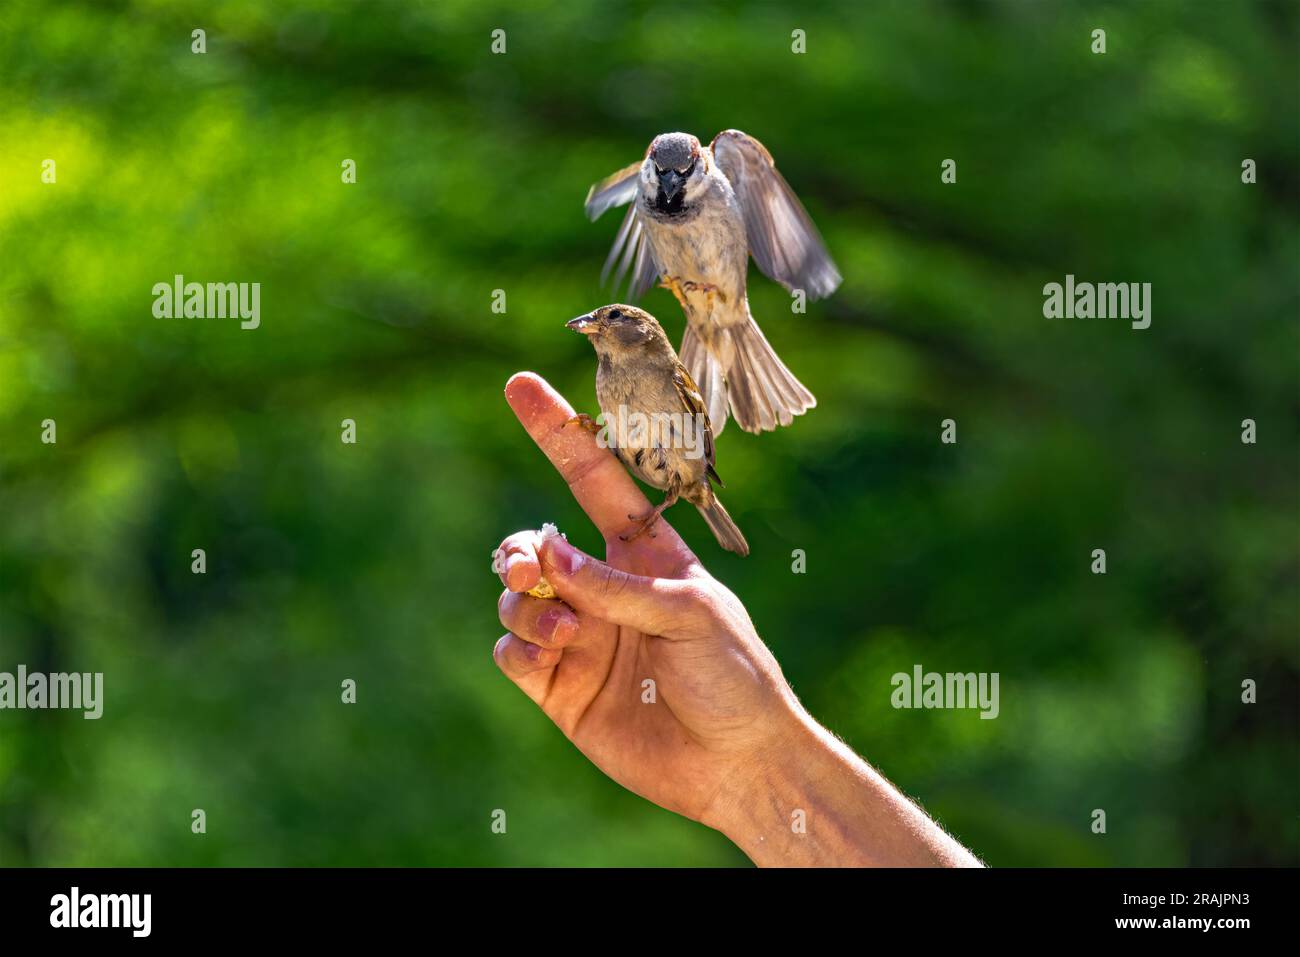 Dar da mangiare agli uccelli. I passeri scivolano e si aggrappano alle dita di un uomo per mangiare briciole di pane. Foto Stock